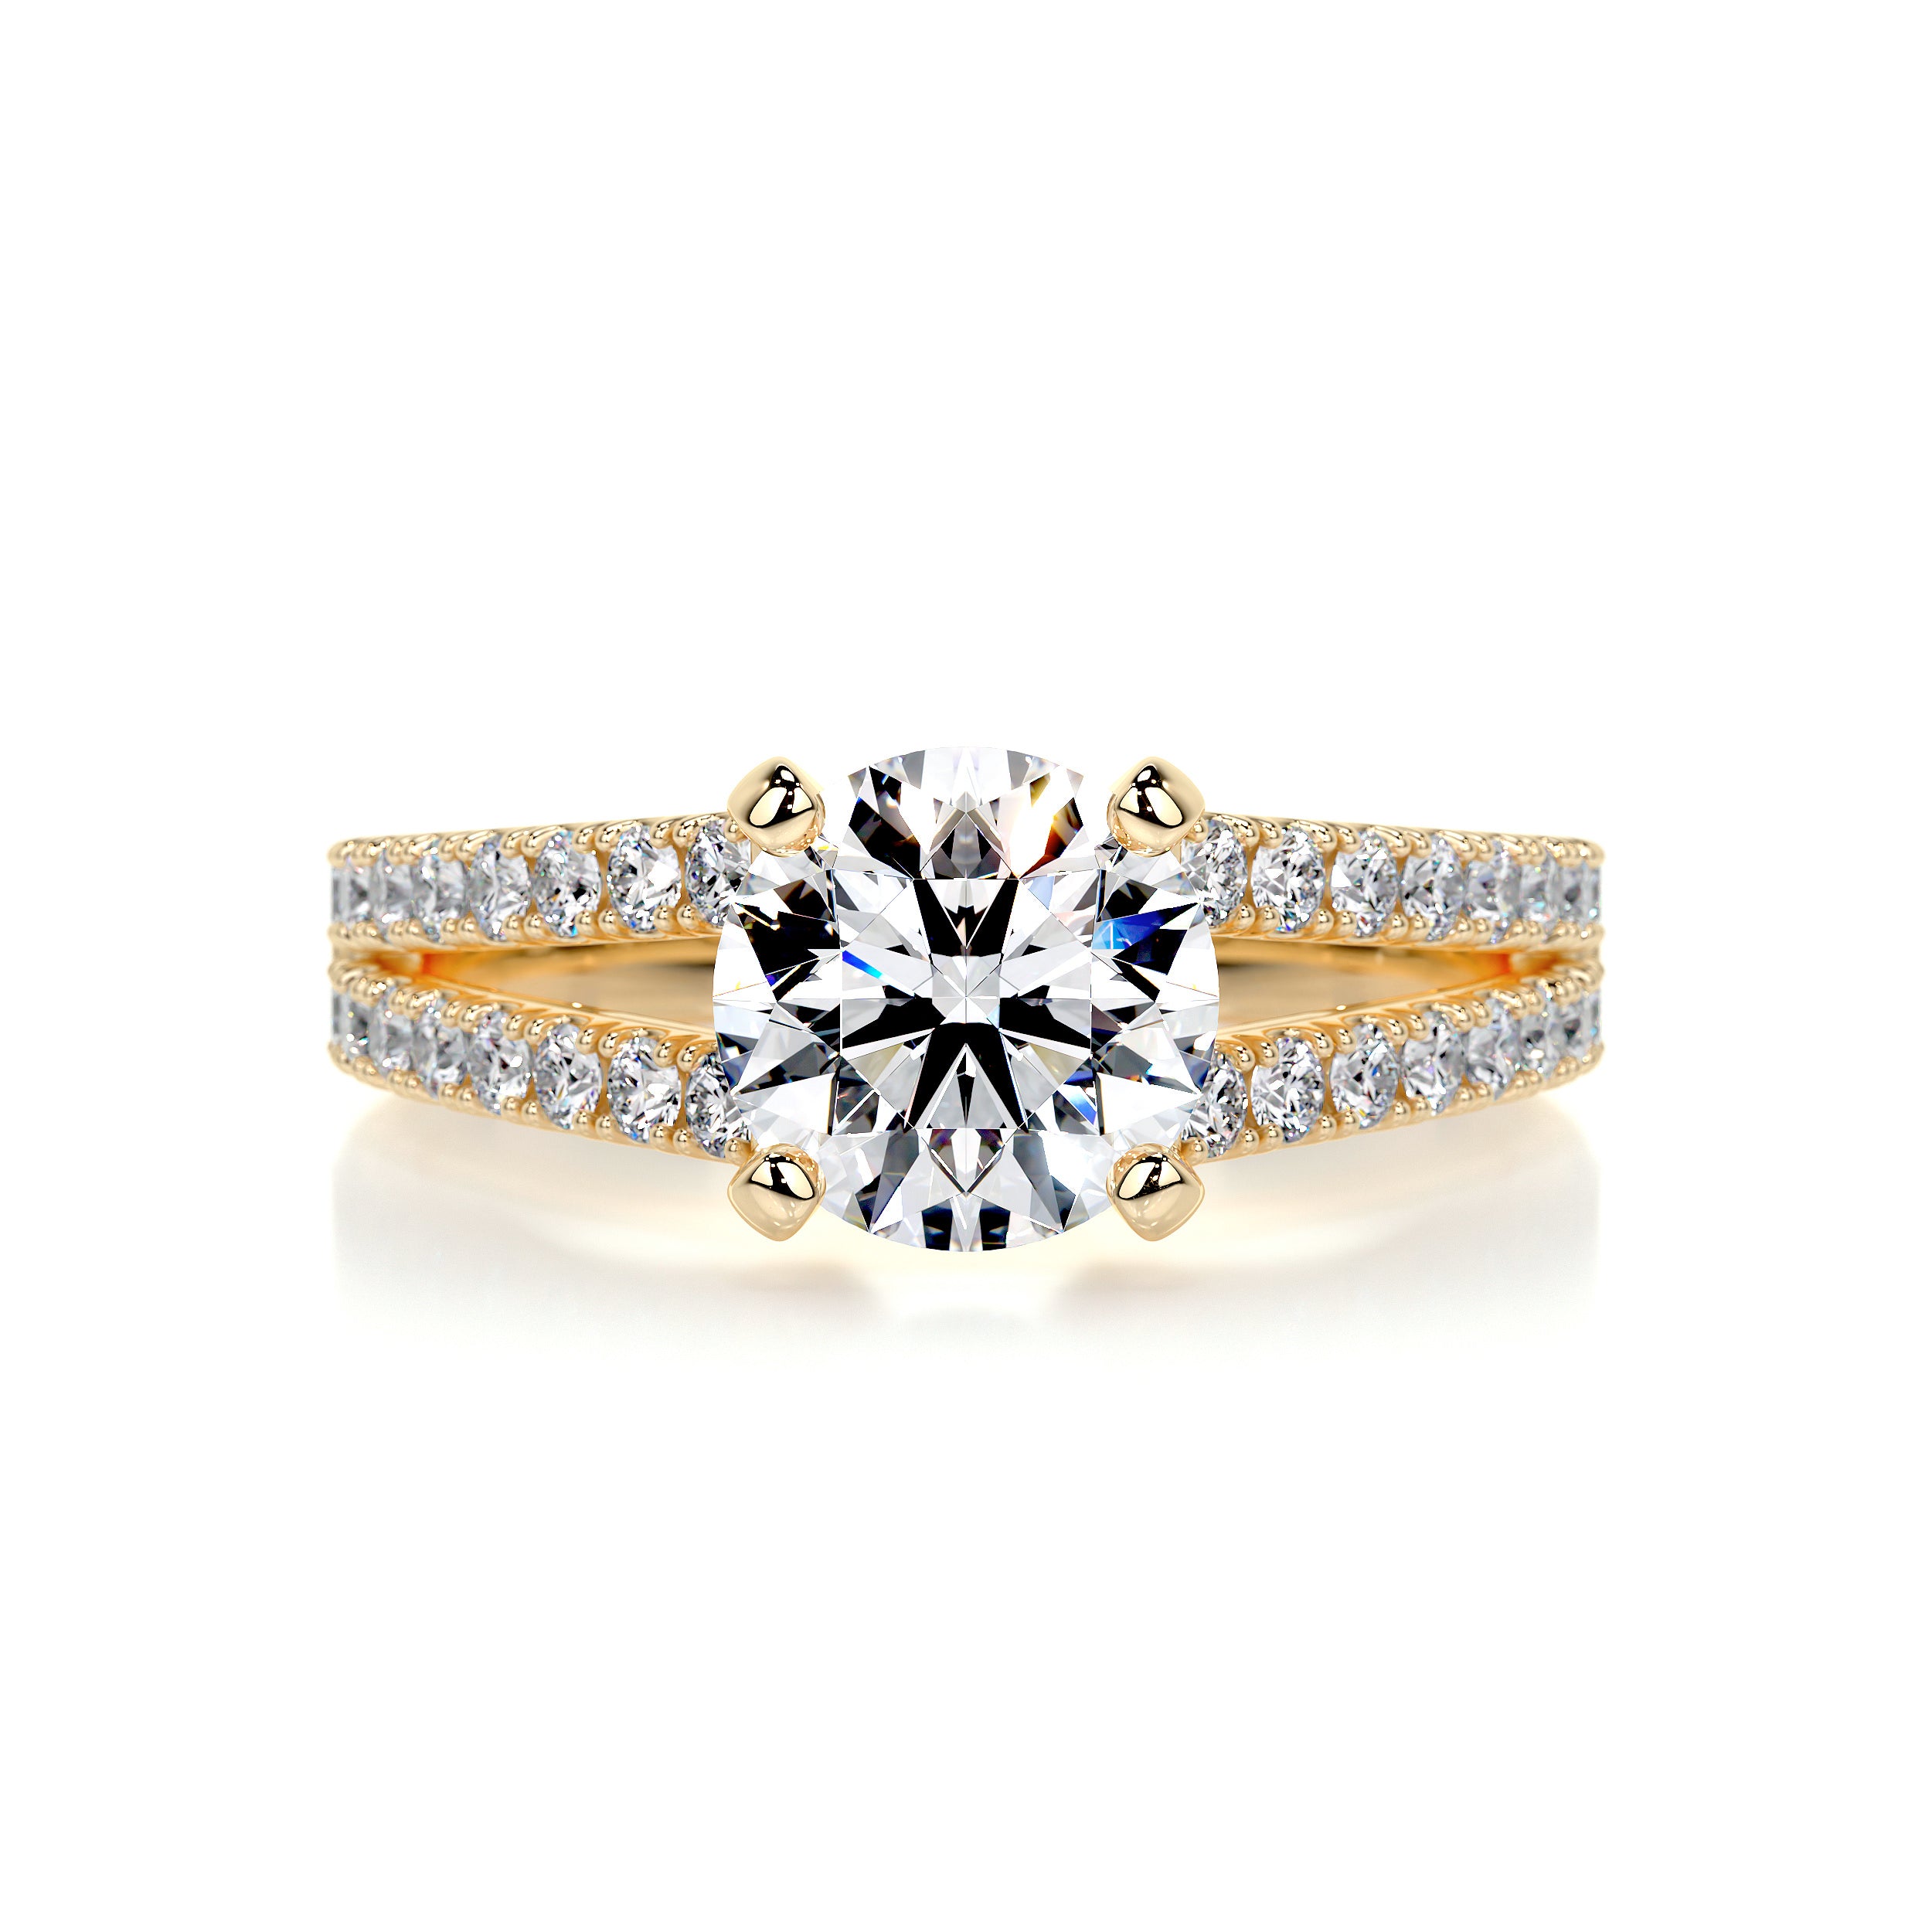 Sadie Diamond Engagement Ring   (2 Carat) -18K Yellow Gold